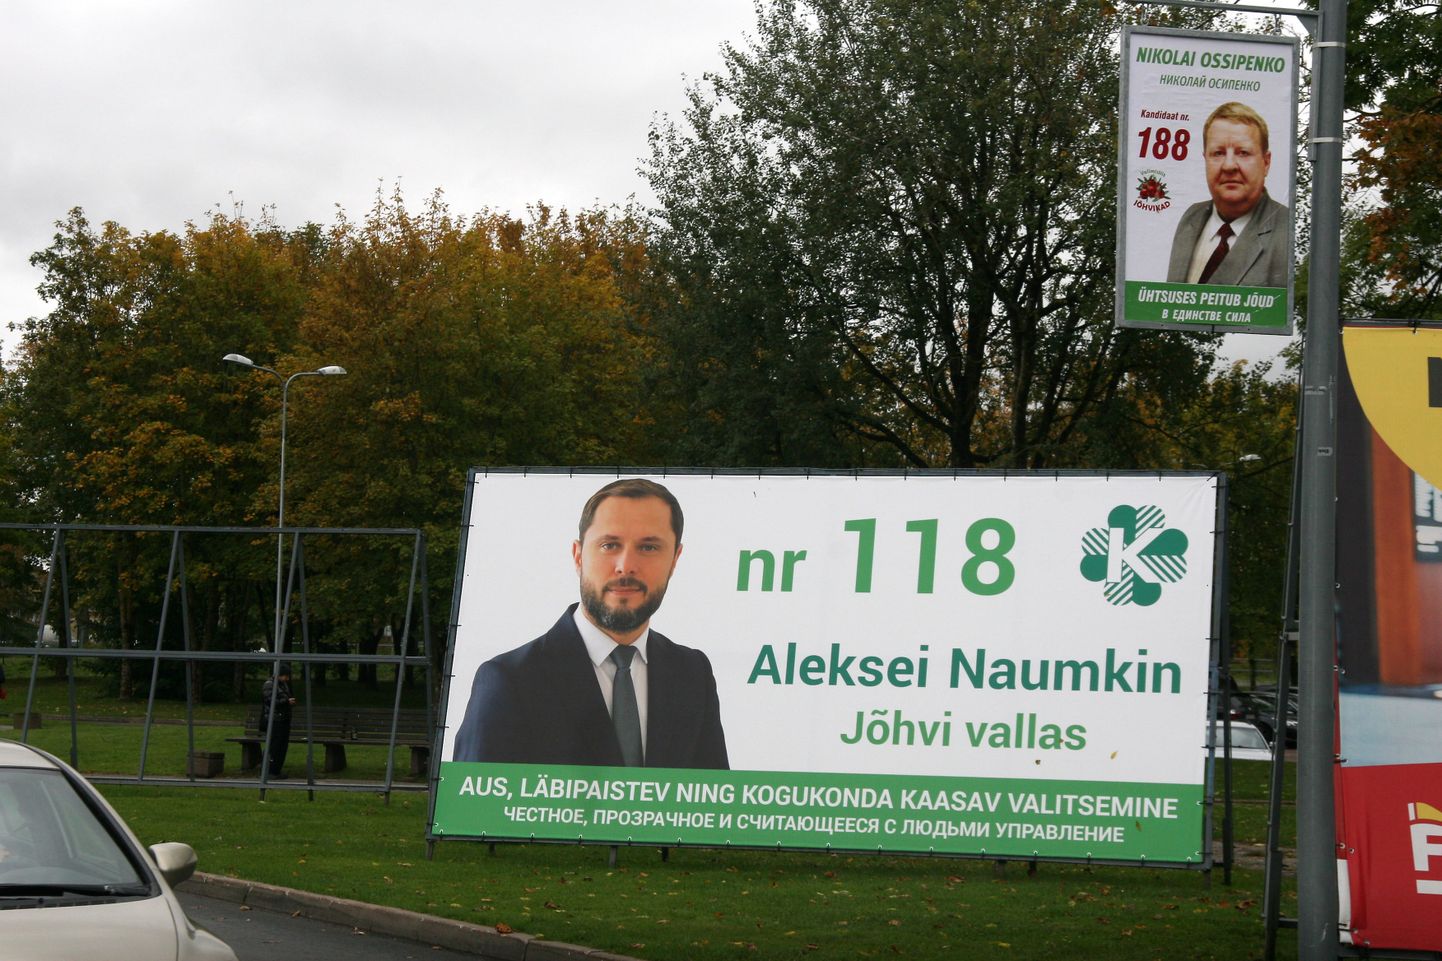 Varem Nikolai Ossipenko valimisliitu esindanud Aleksei Naumkin kandideeris neil valimistel Keskerakonna nimekirjas.